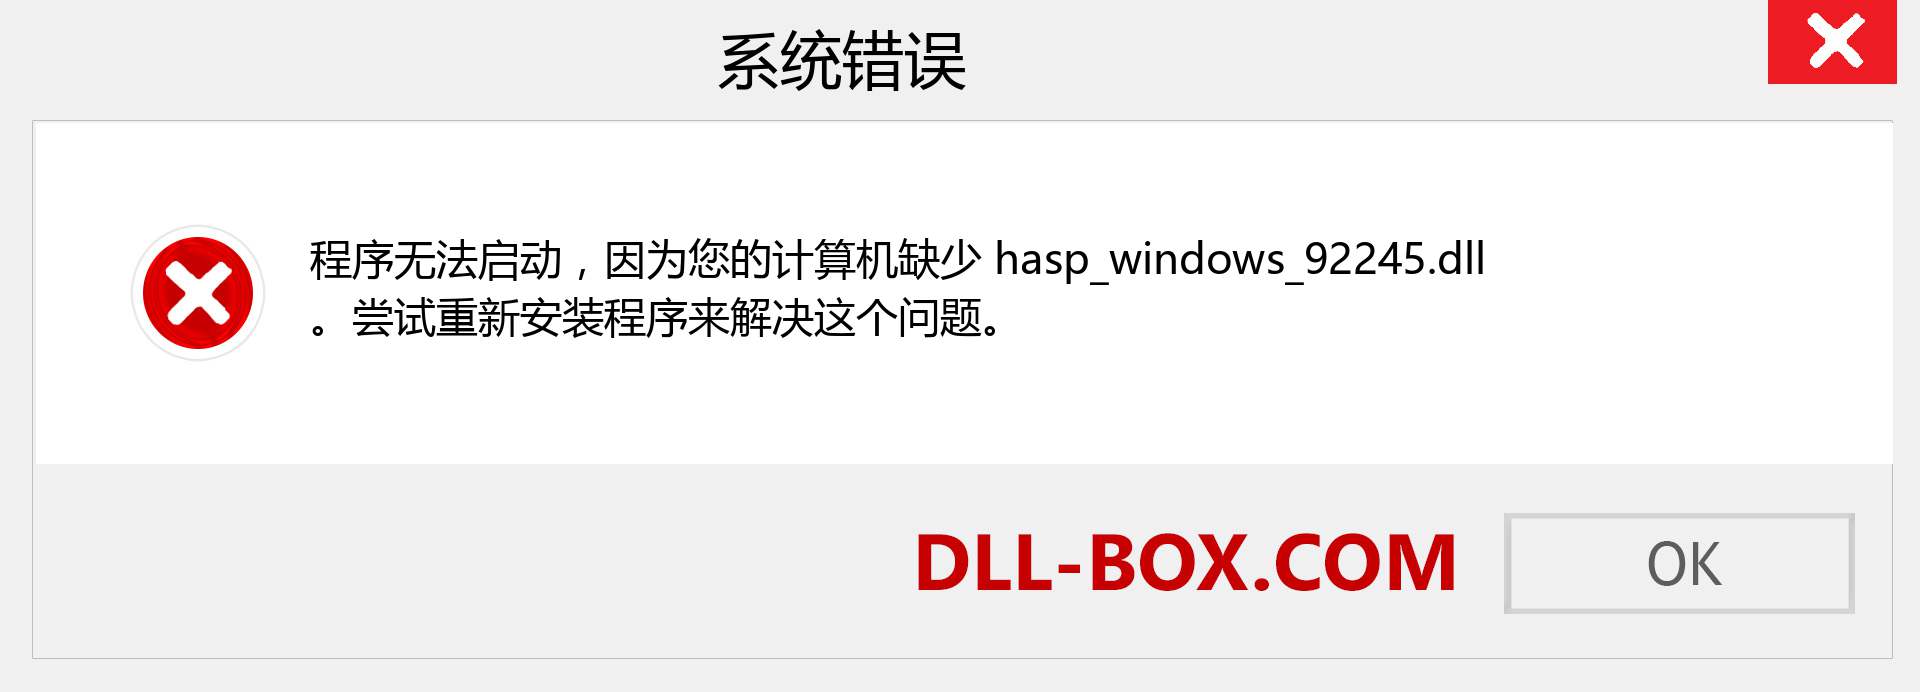 hasp_windows_92245.dll 文件丢失？。 适用于 Windows 7、8、10 的下载 - 修复 Windows、照片、图像上的 hasp_windows_92245 dll 丢失错误